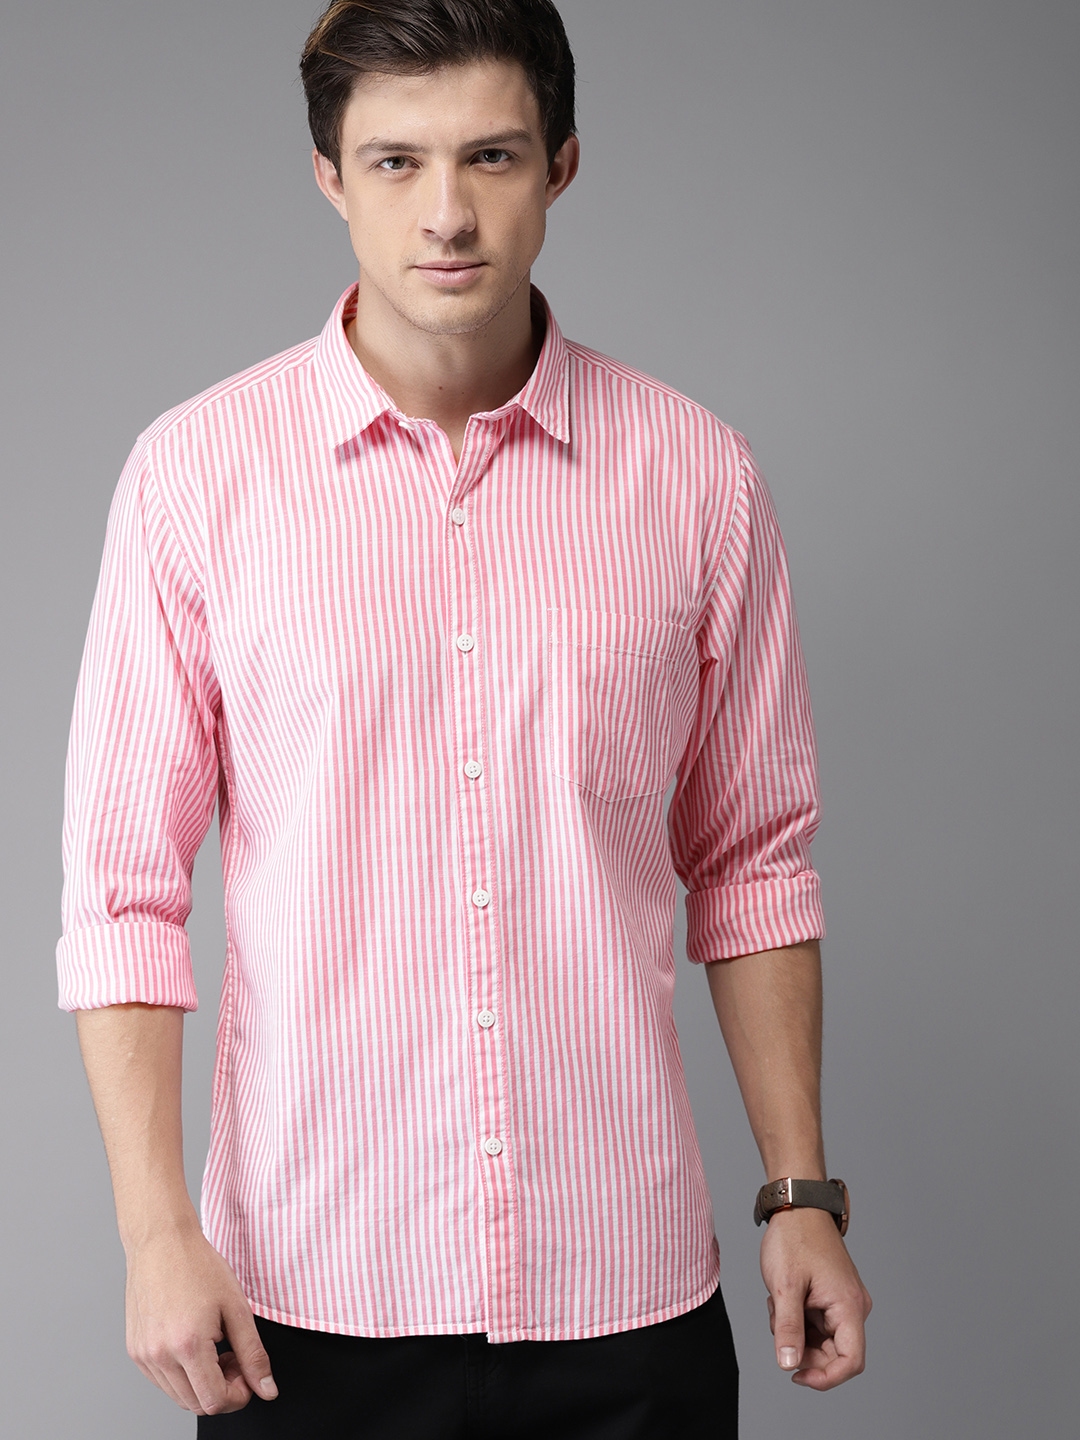 Buy Moda Rapido Men Pink & White Striped Casual Shirt - Shirts for Men ...